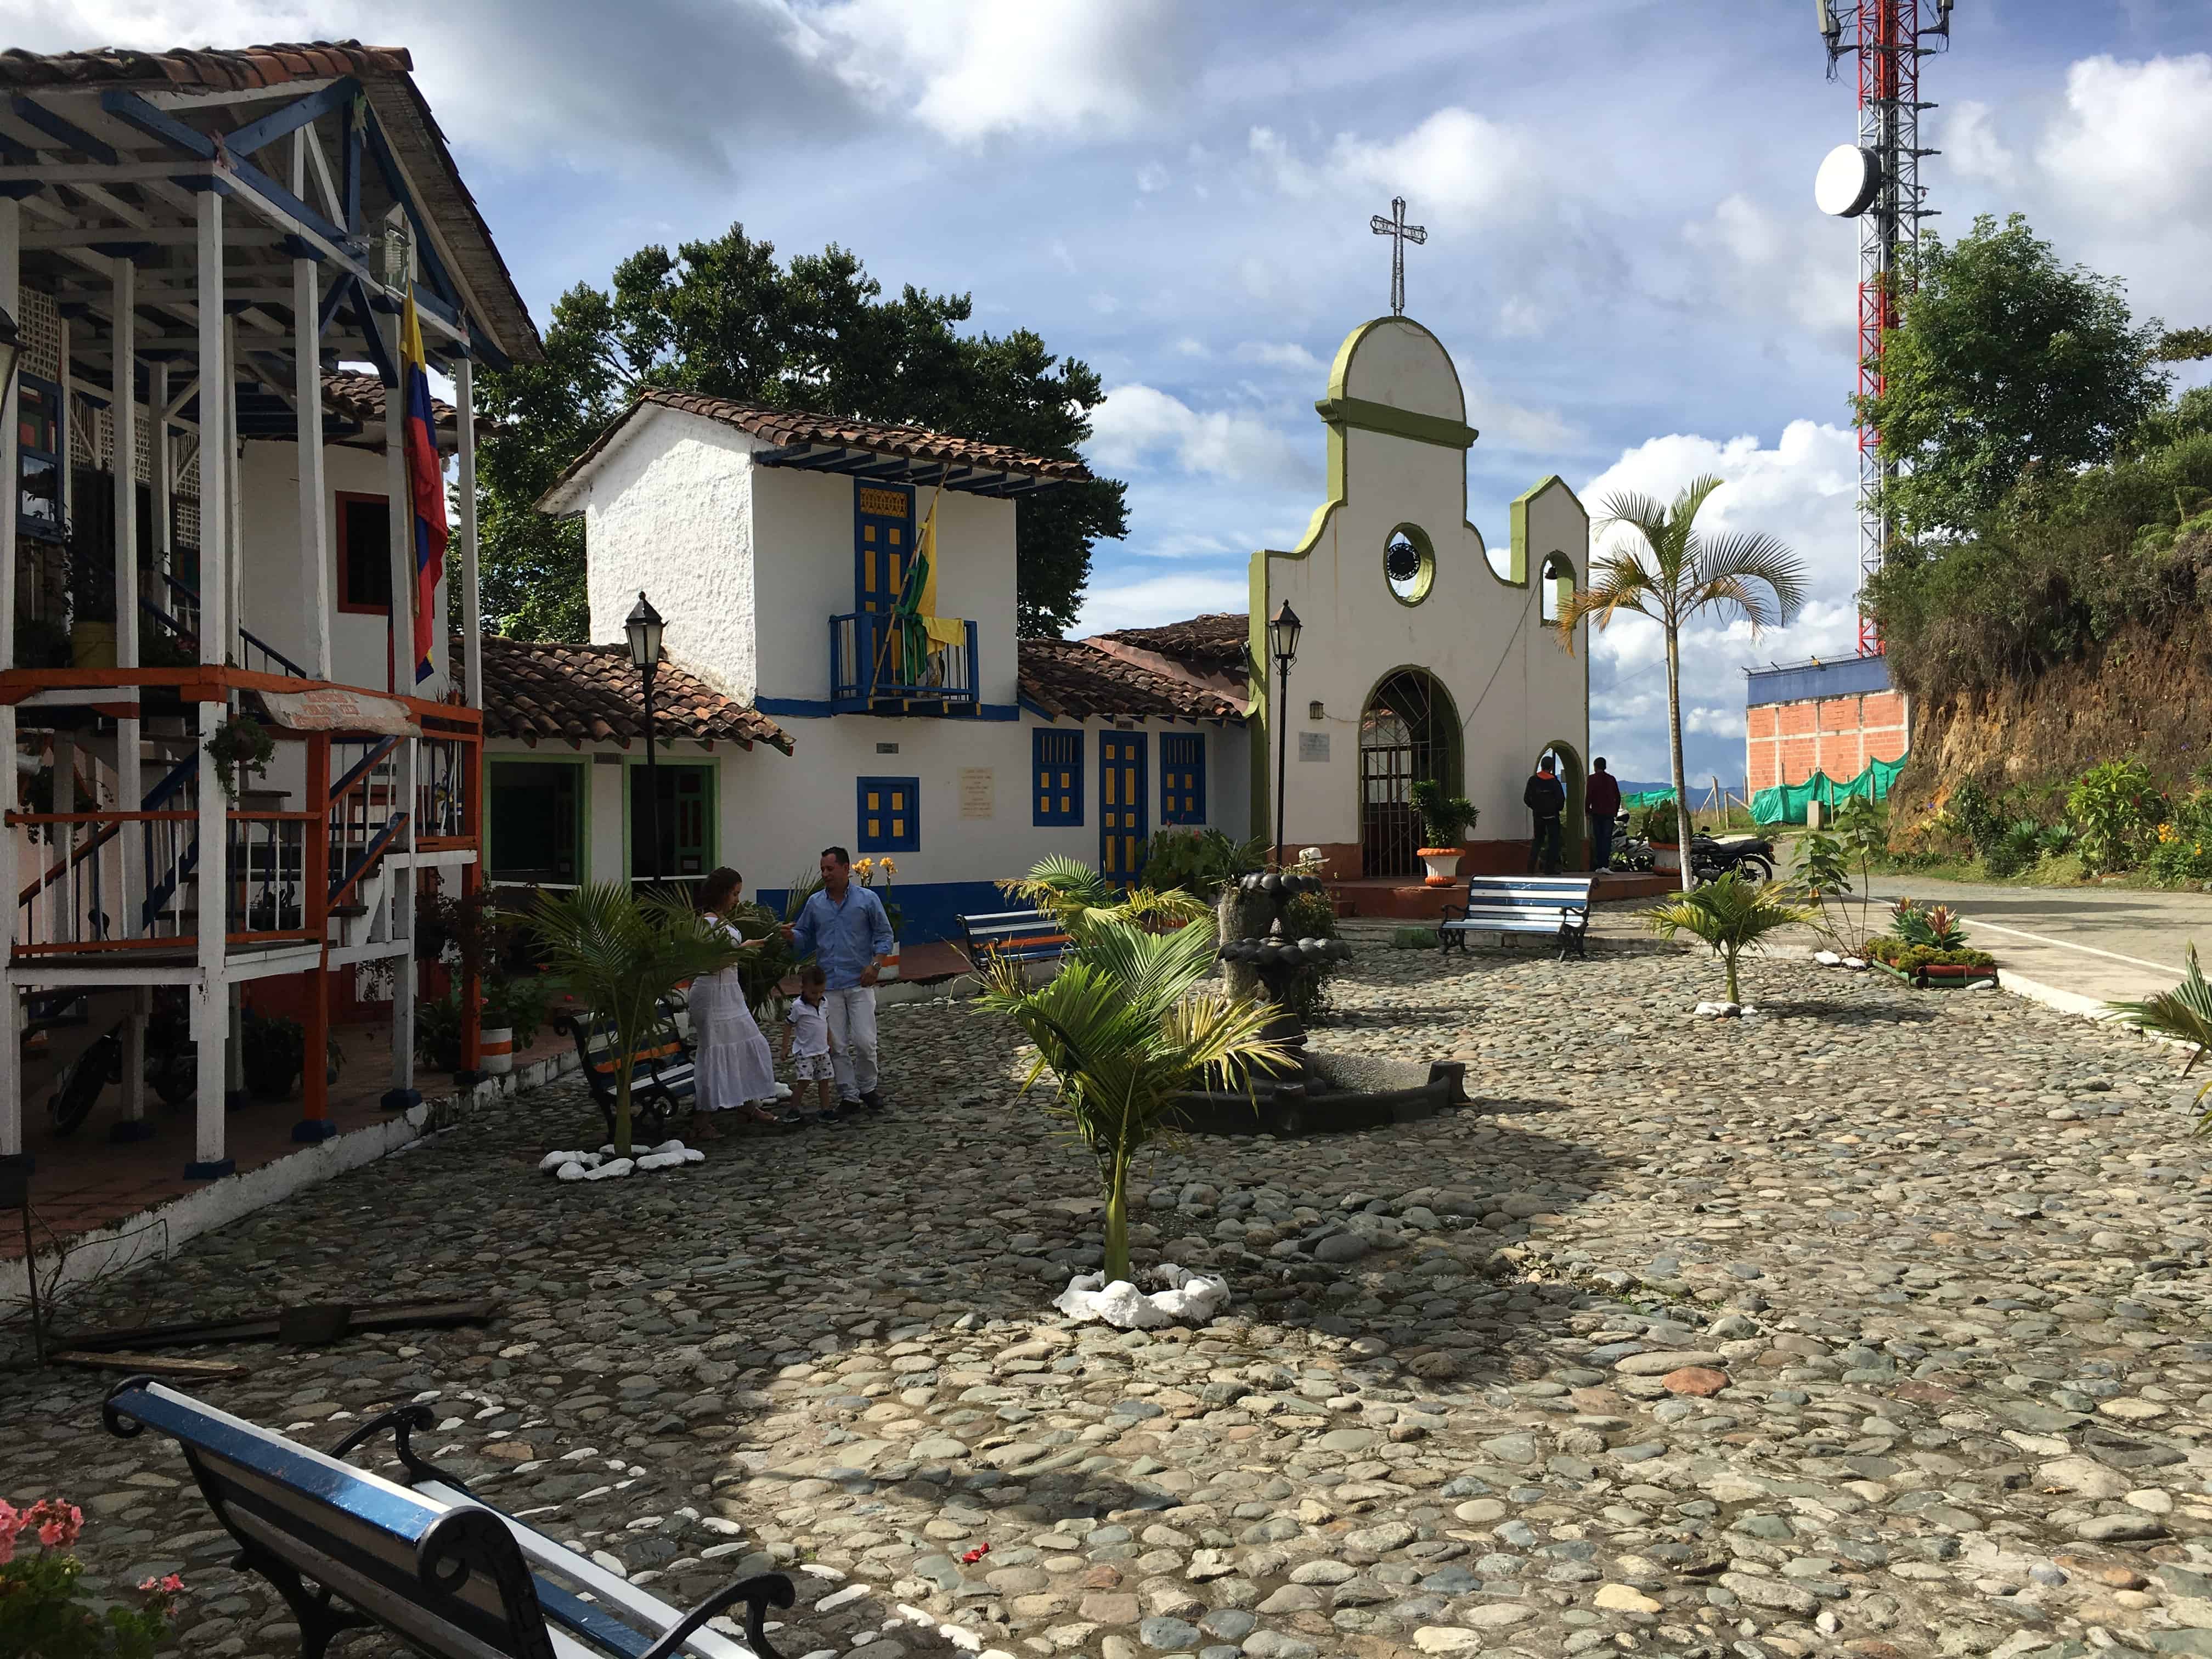 Pueblito Viejo in Aguadas, Caldas, Colombia